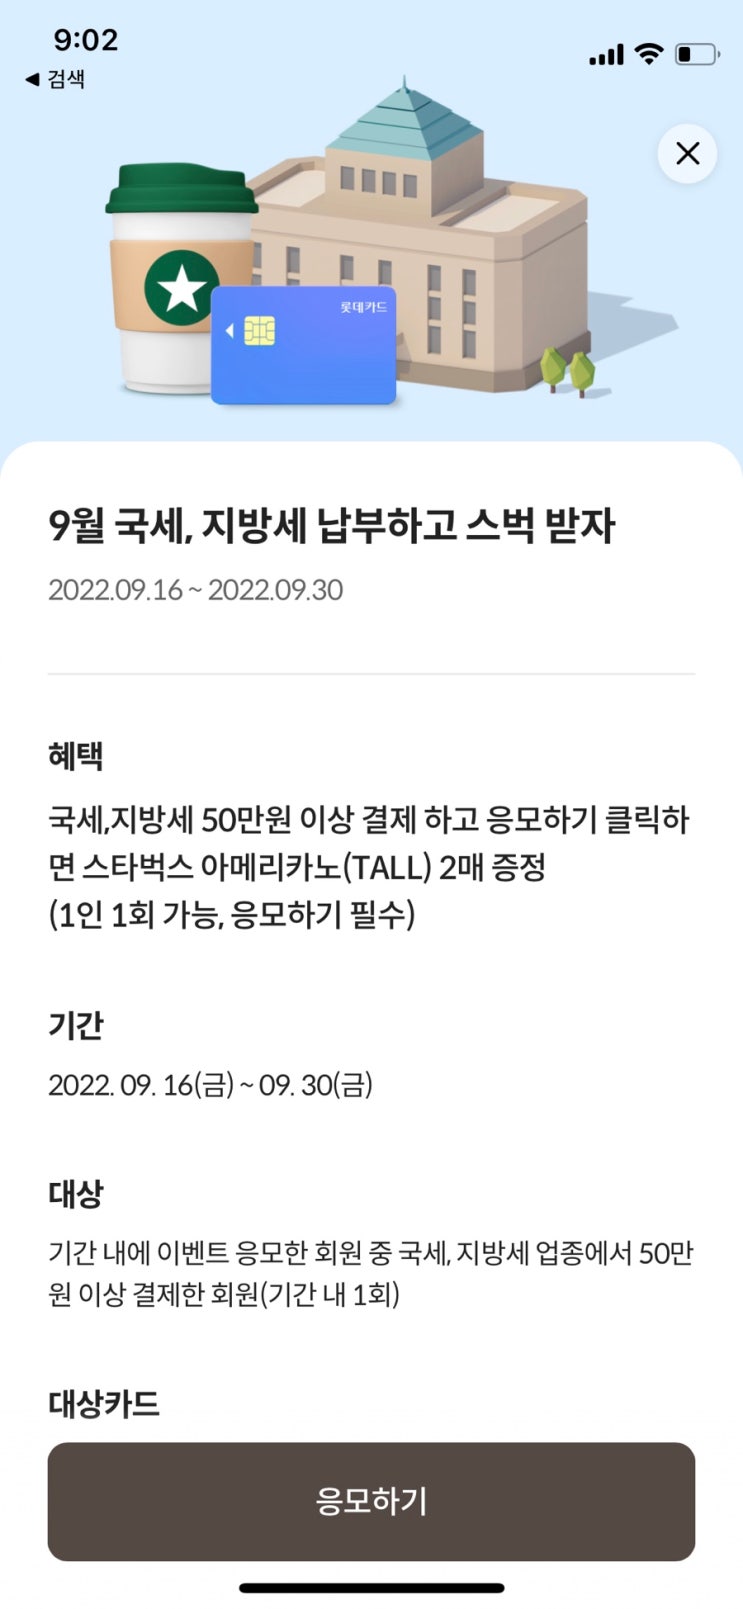 [재테크] 9월 재산세(지방세) 납부 카드혜택 모음(feat. 스타벅스)